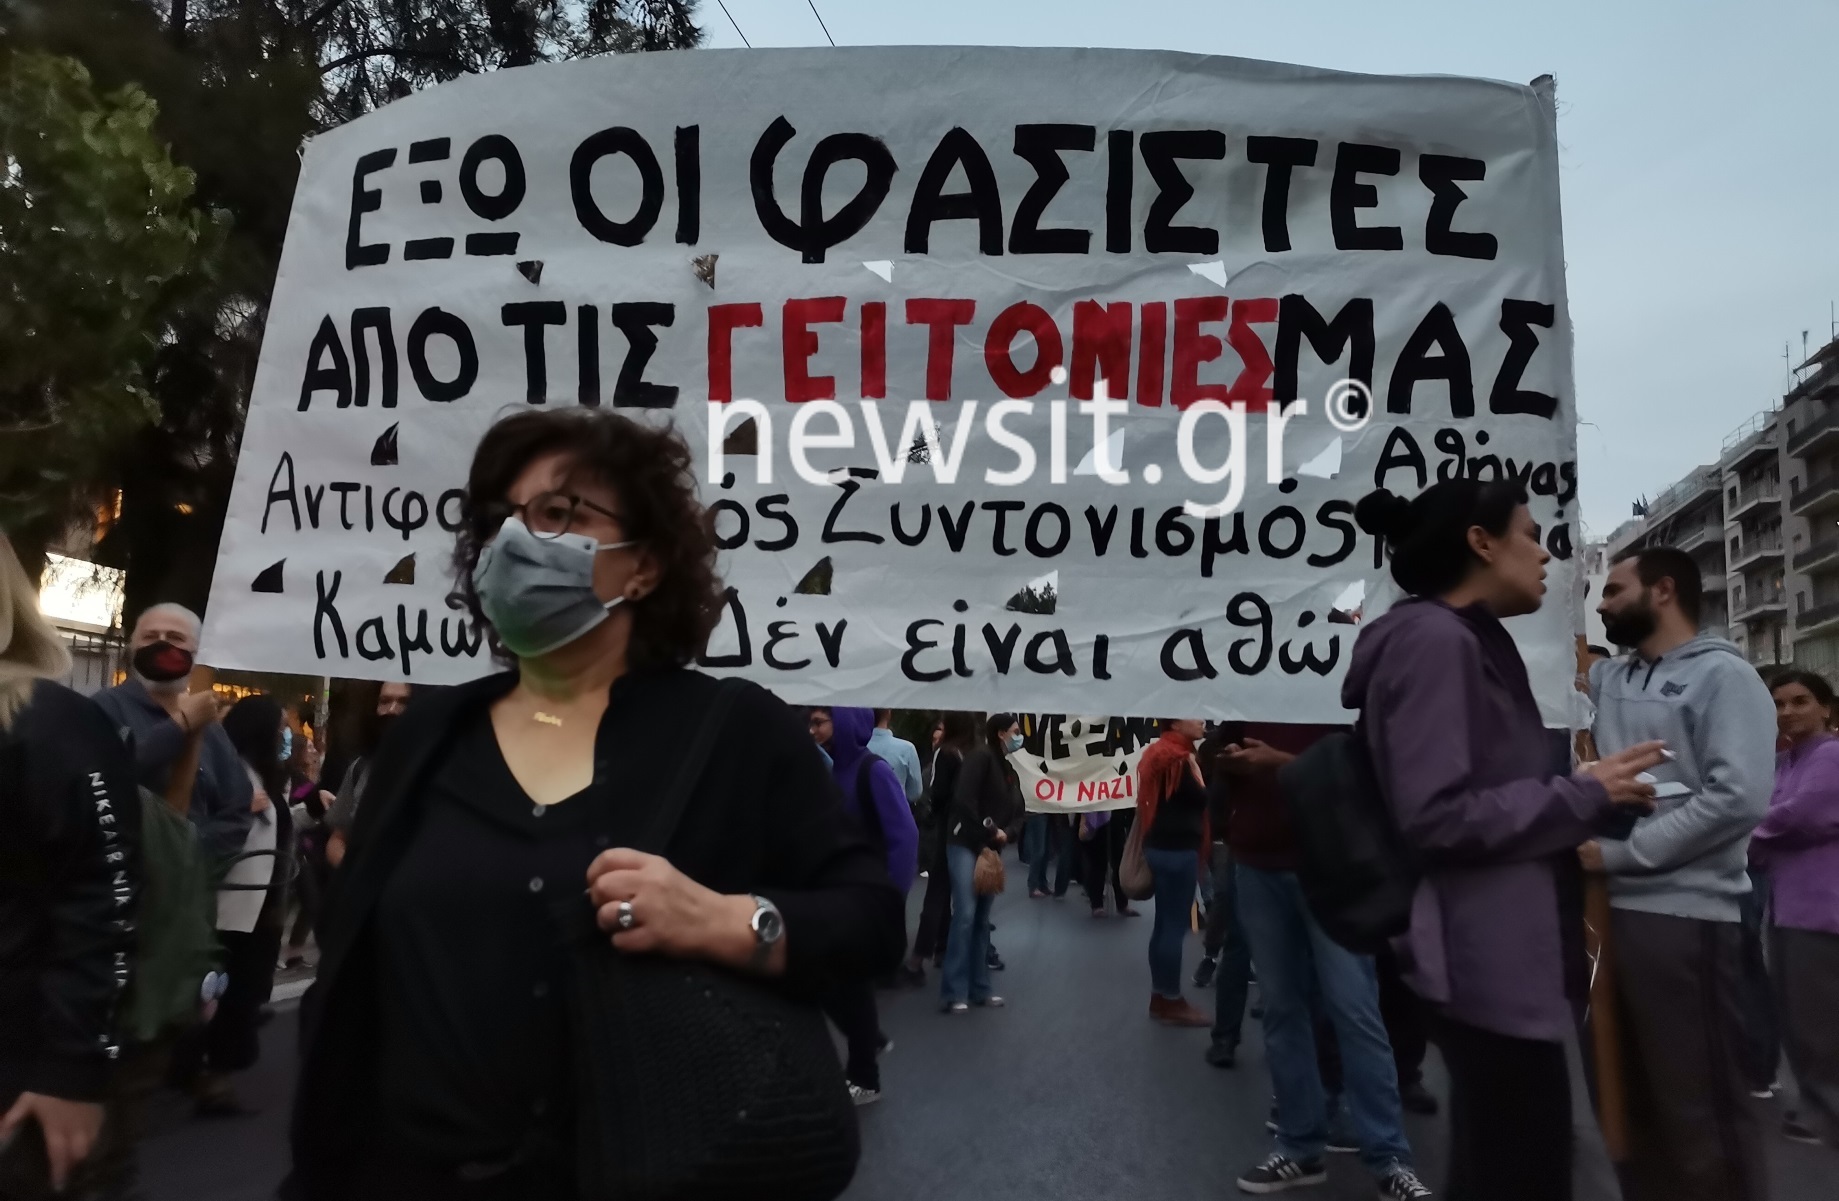 Επικεφαλής η Μάγδα Φύσσα στην αντιφασιστική πορεία στην Αθήνα – Κλειστοί δρόμοι